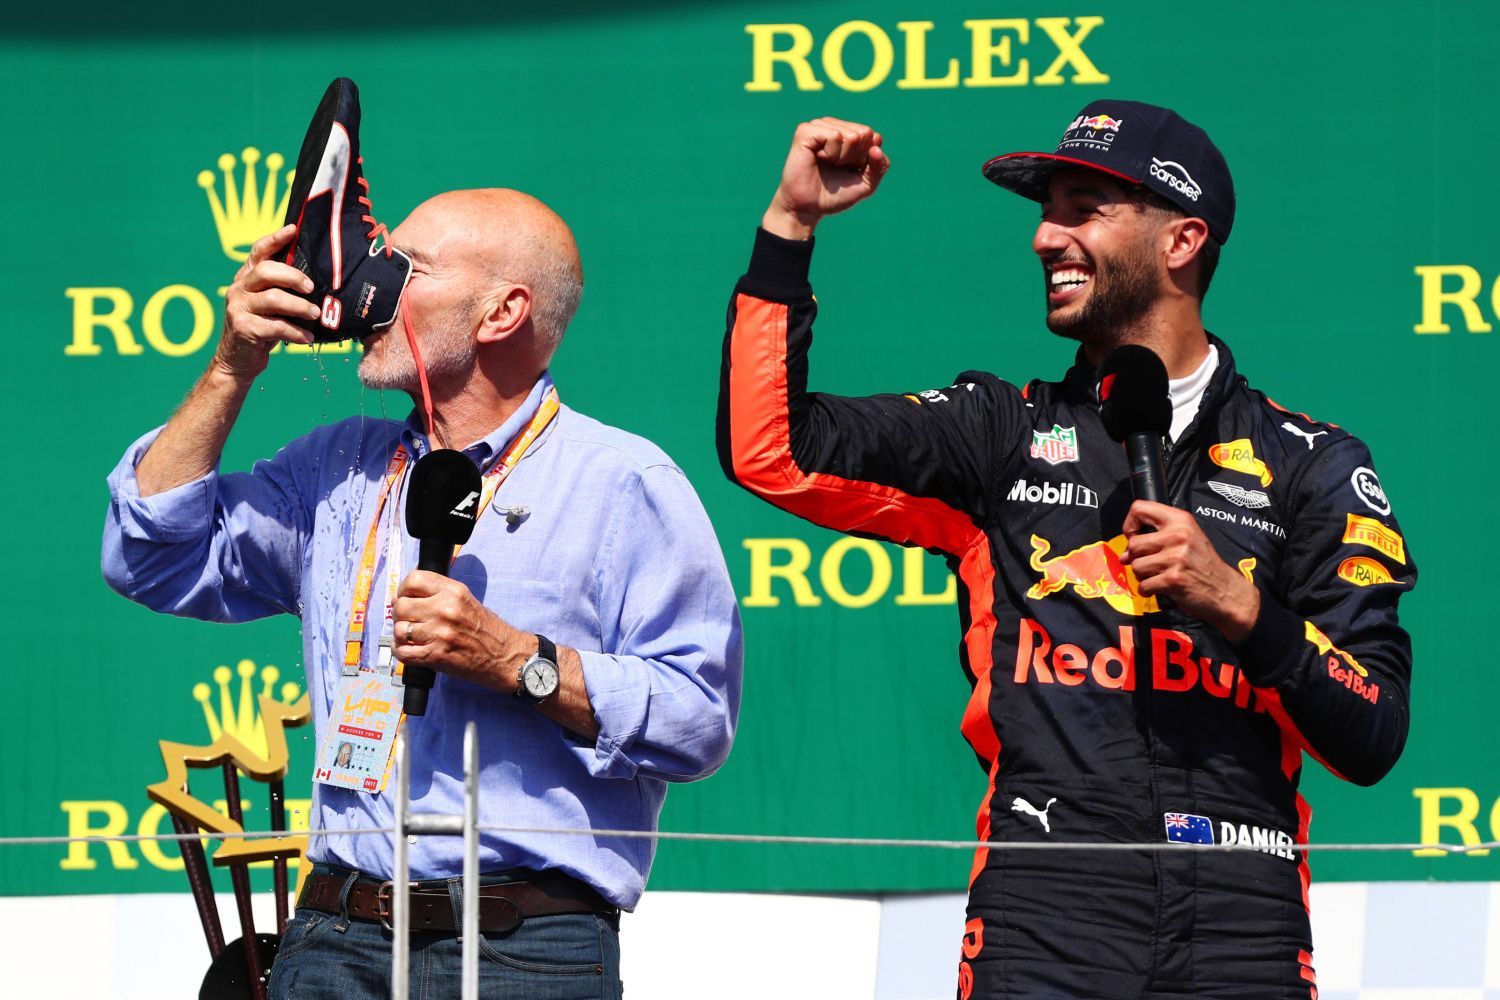 F1, VC Kanady 2017: Patrick Stewart pije šampaňské z boty Daniela Ricciarda